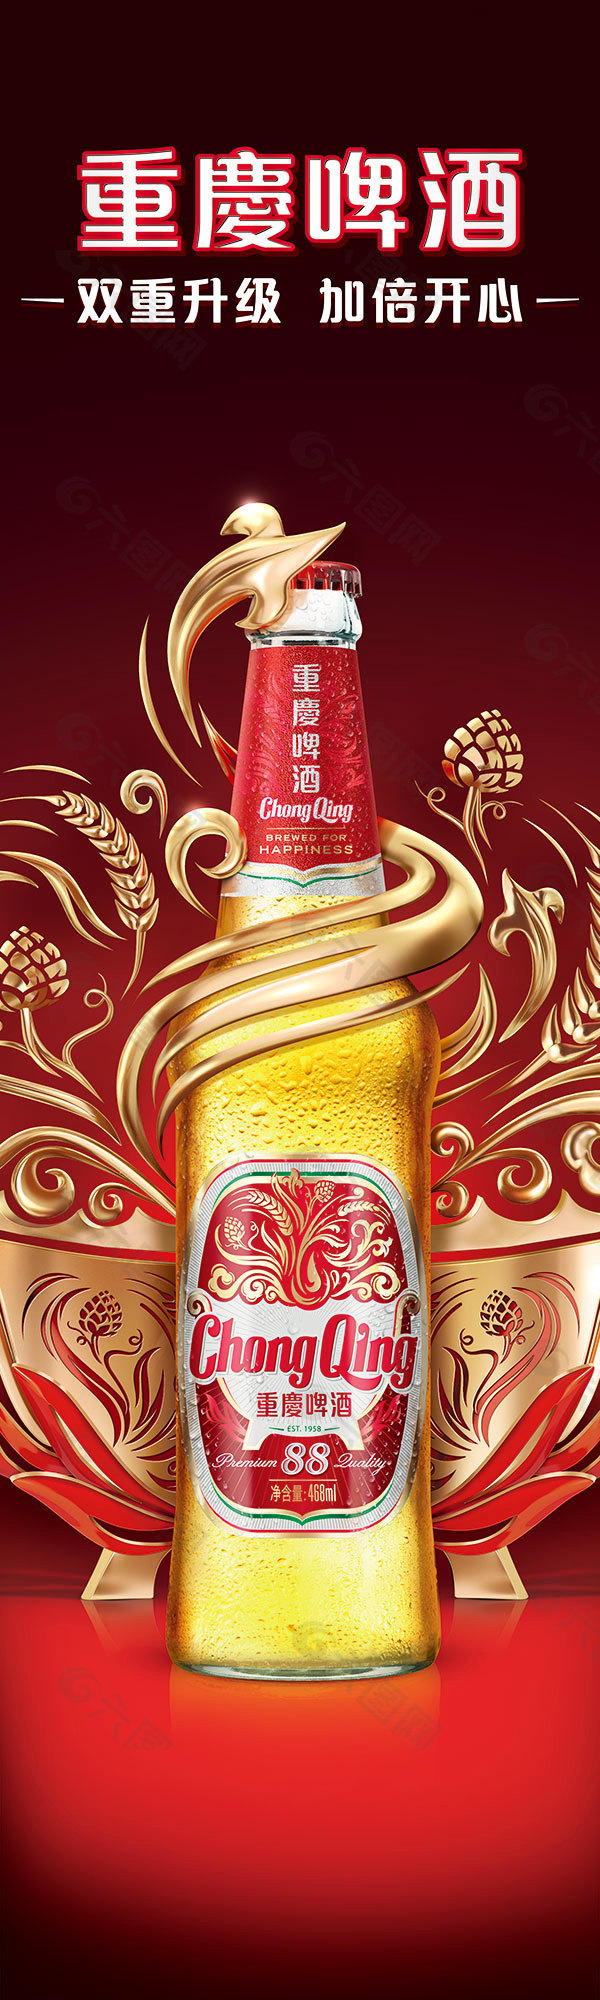 重庆啤酒广告免费下载